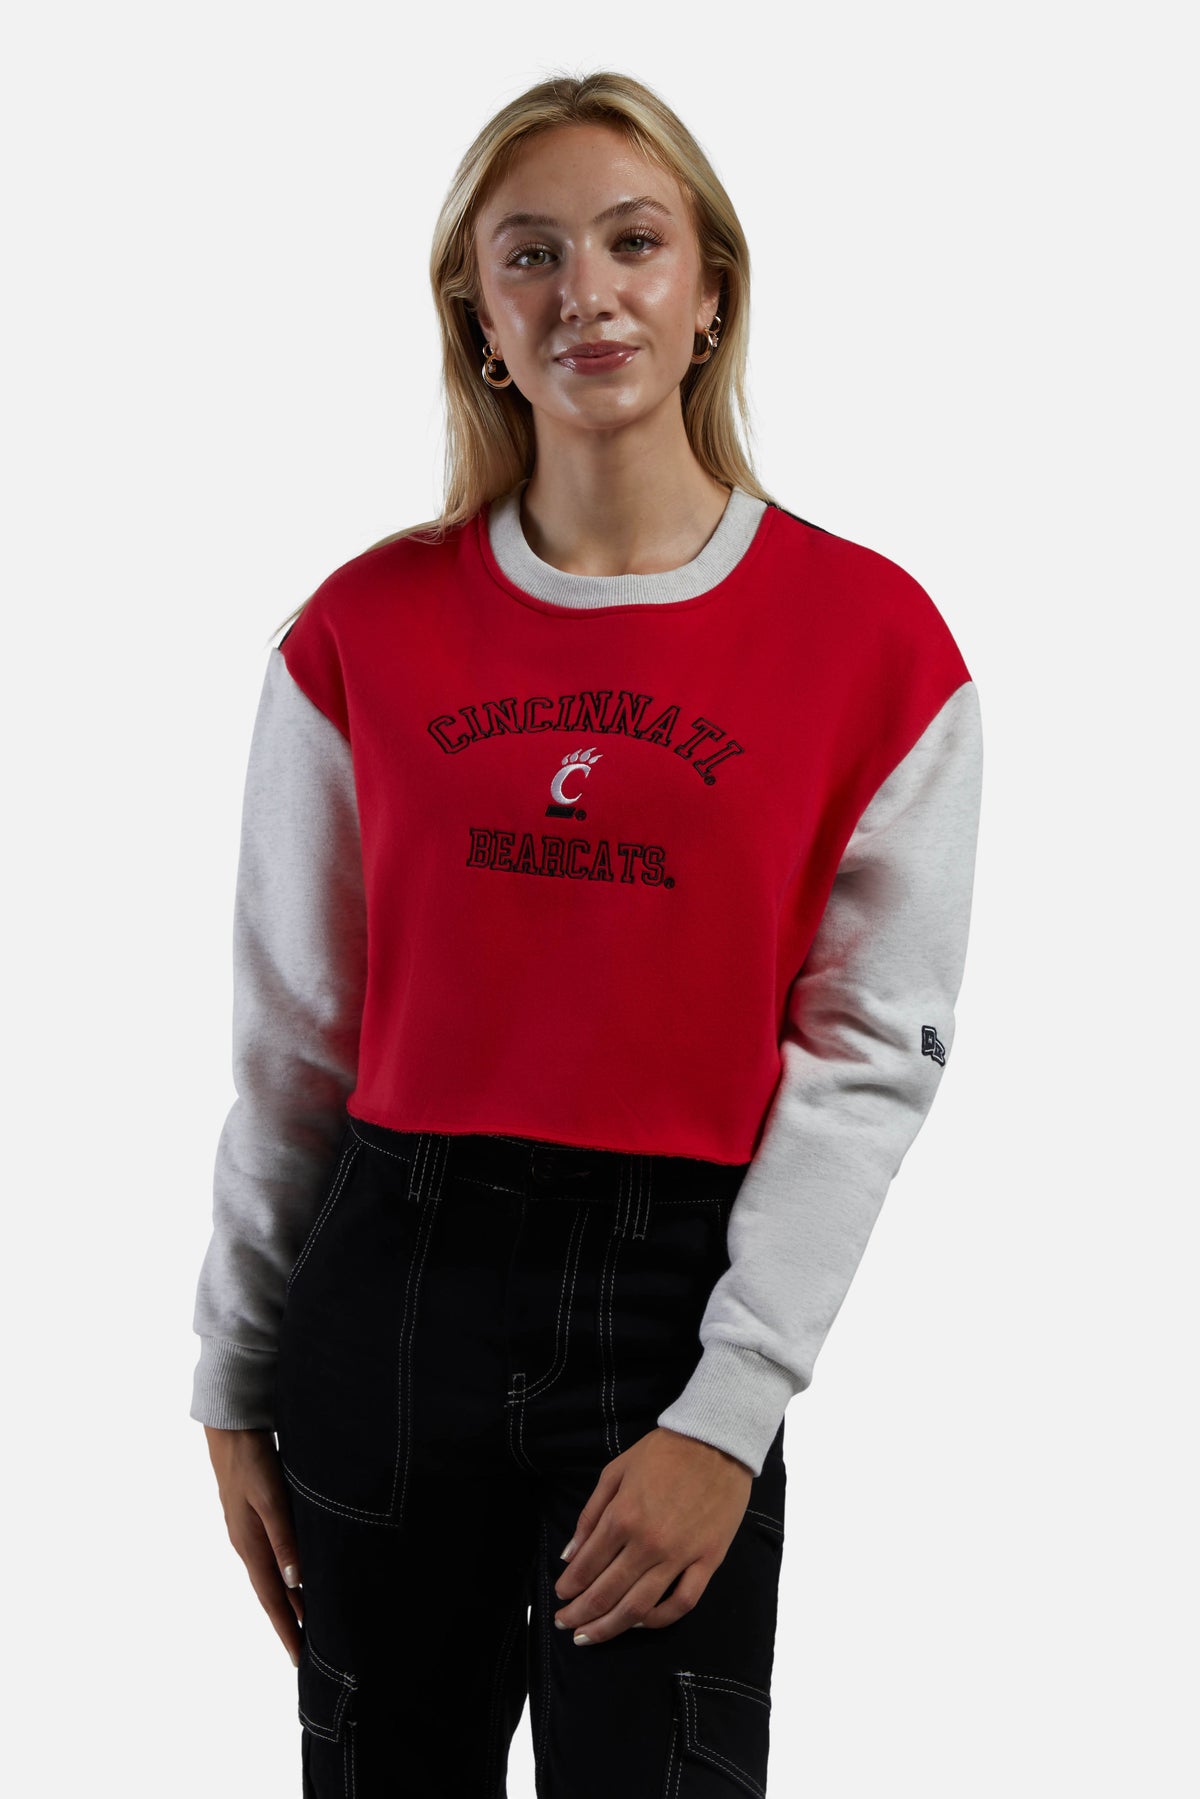 Cincinnati Rookie Sweater